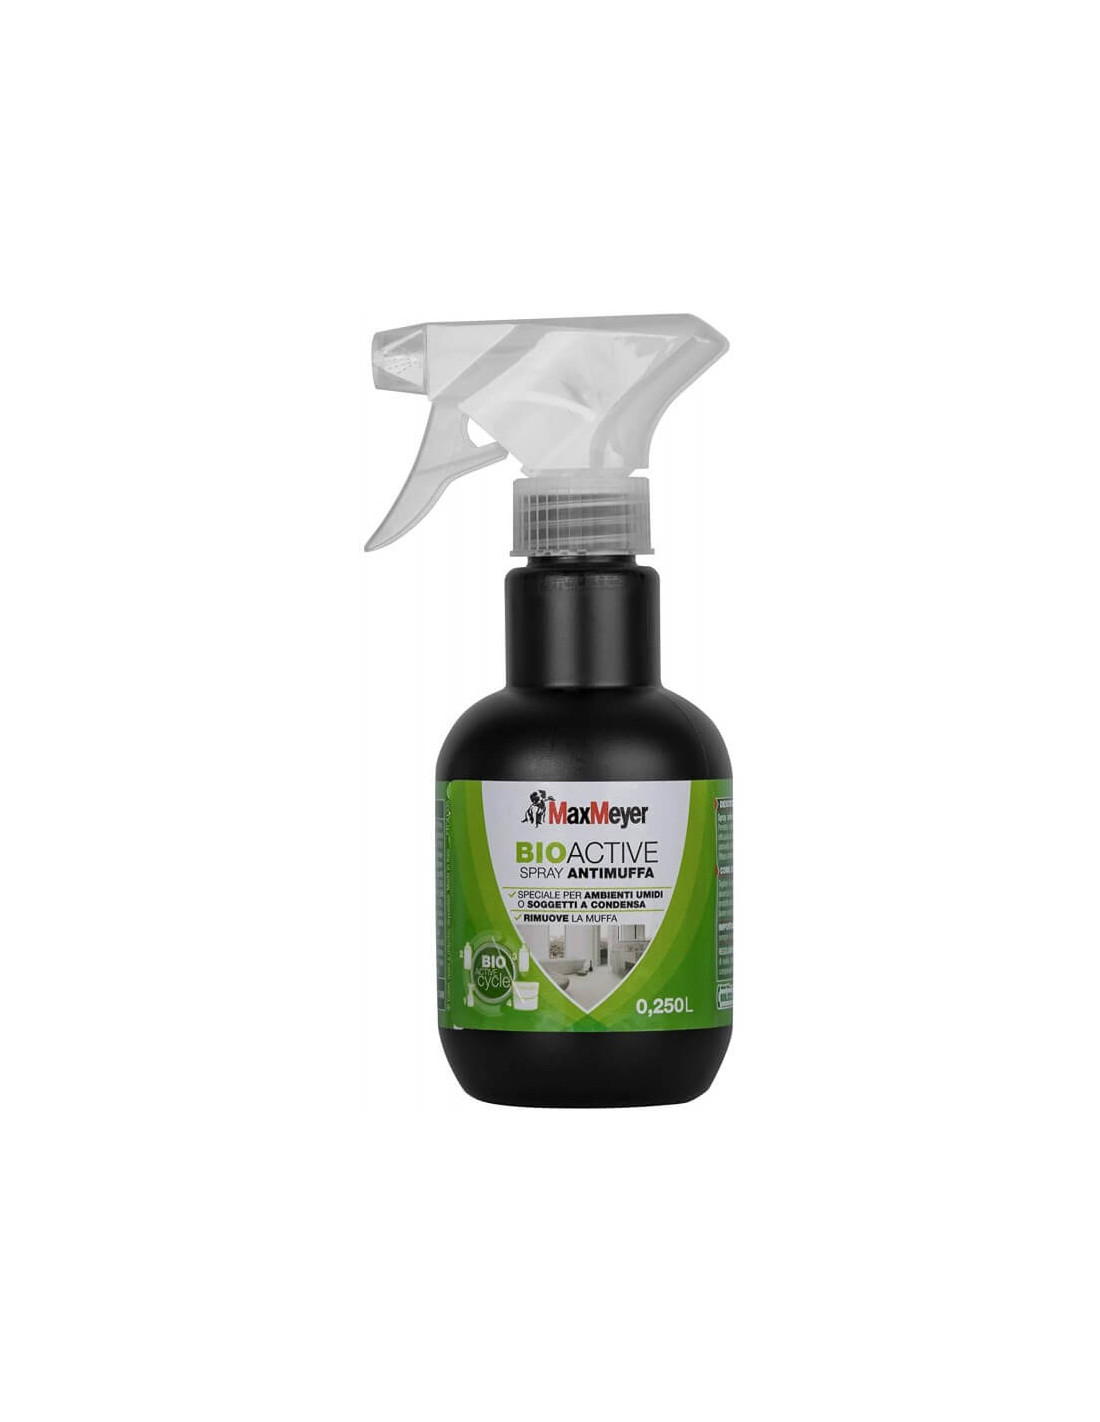 Spray antimuffa bioattivo Maxmayer 0,25 - 164957b500002